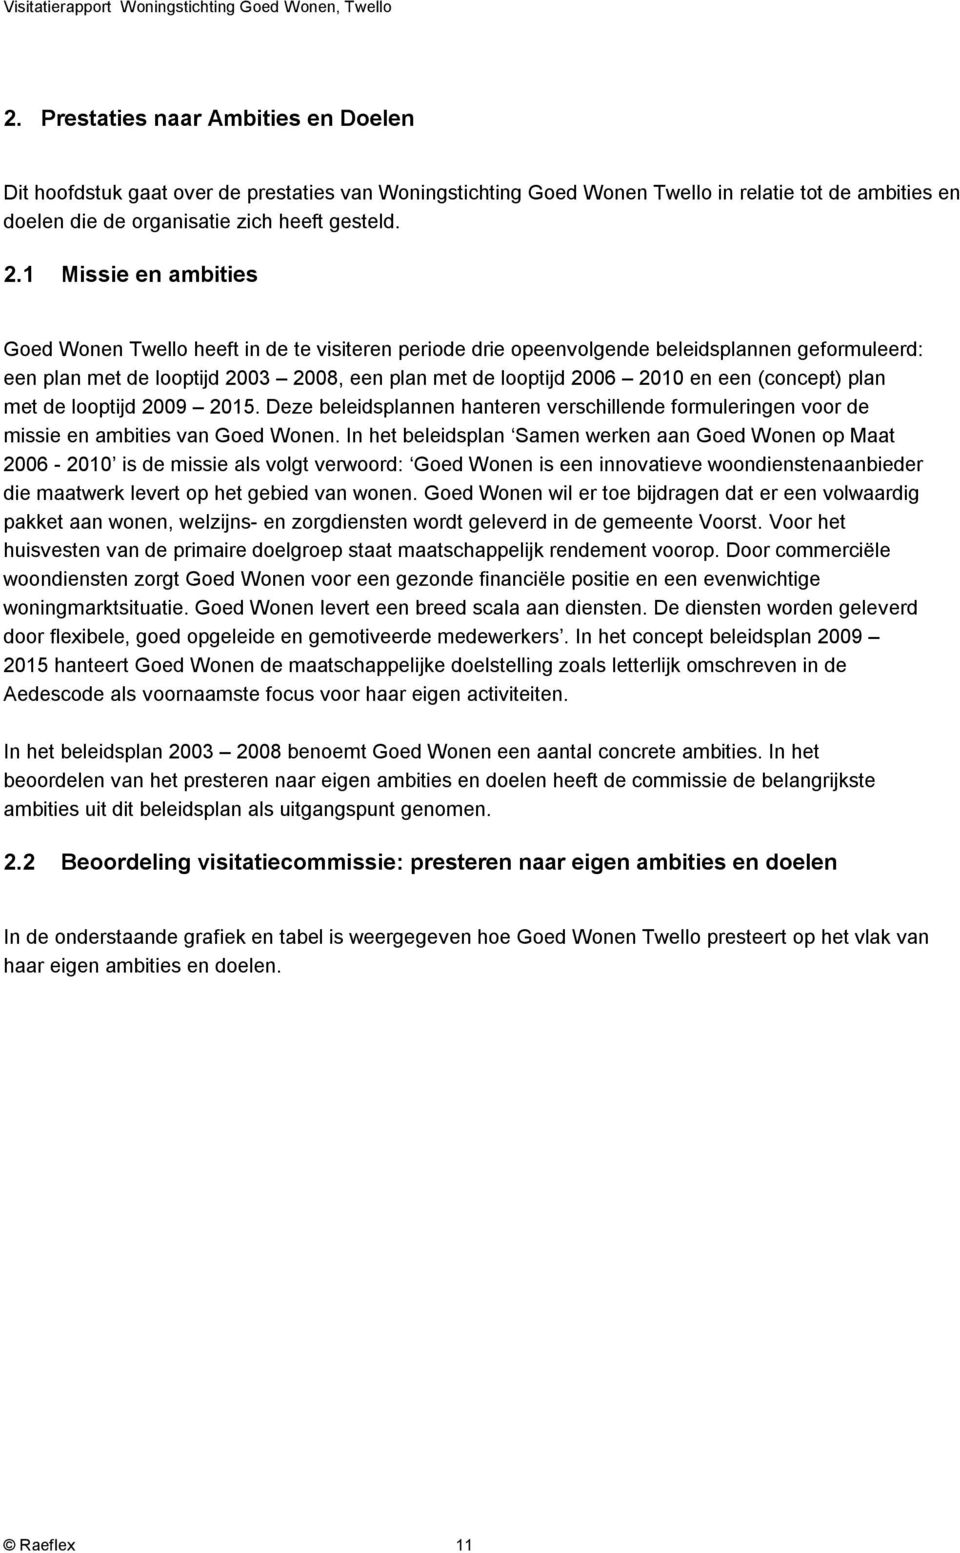 (concept) plan met de looptijd 2009 2015. Deze beleidsplannen hanteren verschillende formuleringen voor de missie en ambities van Goed Wonen.